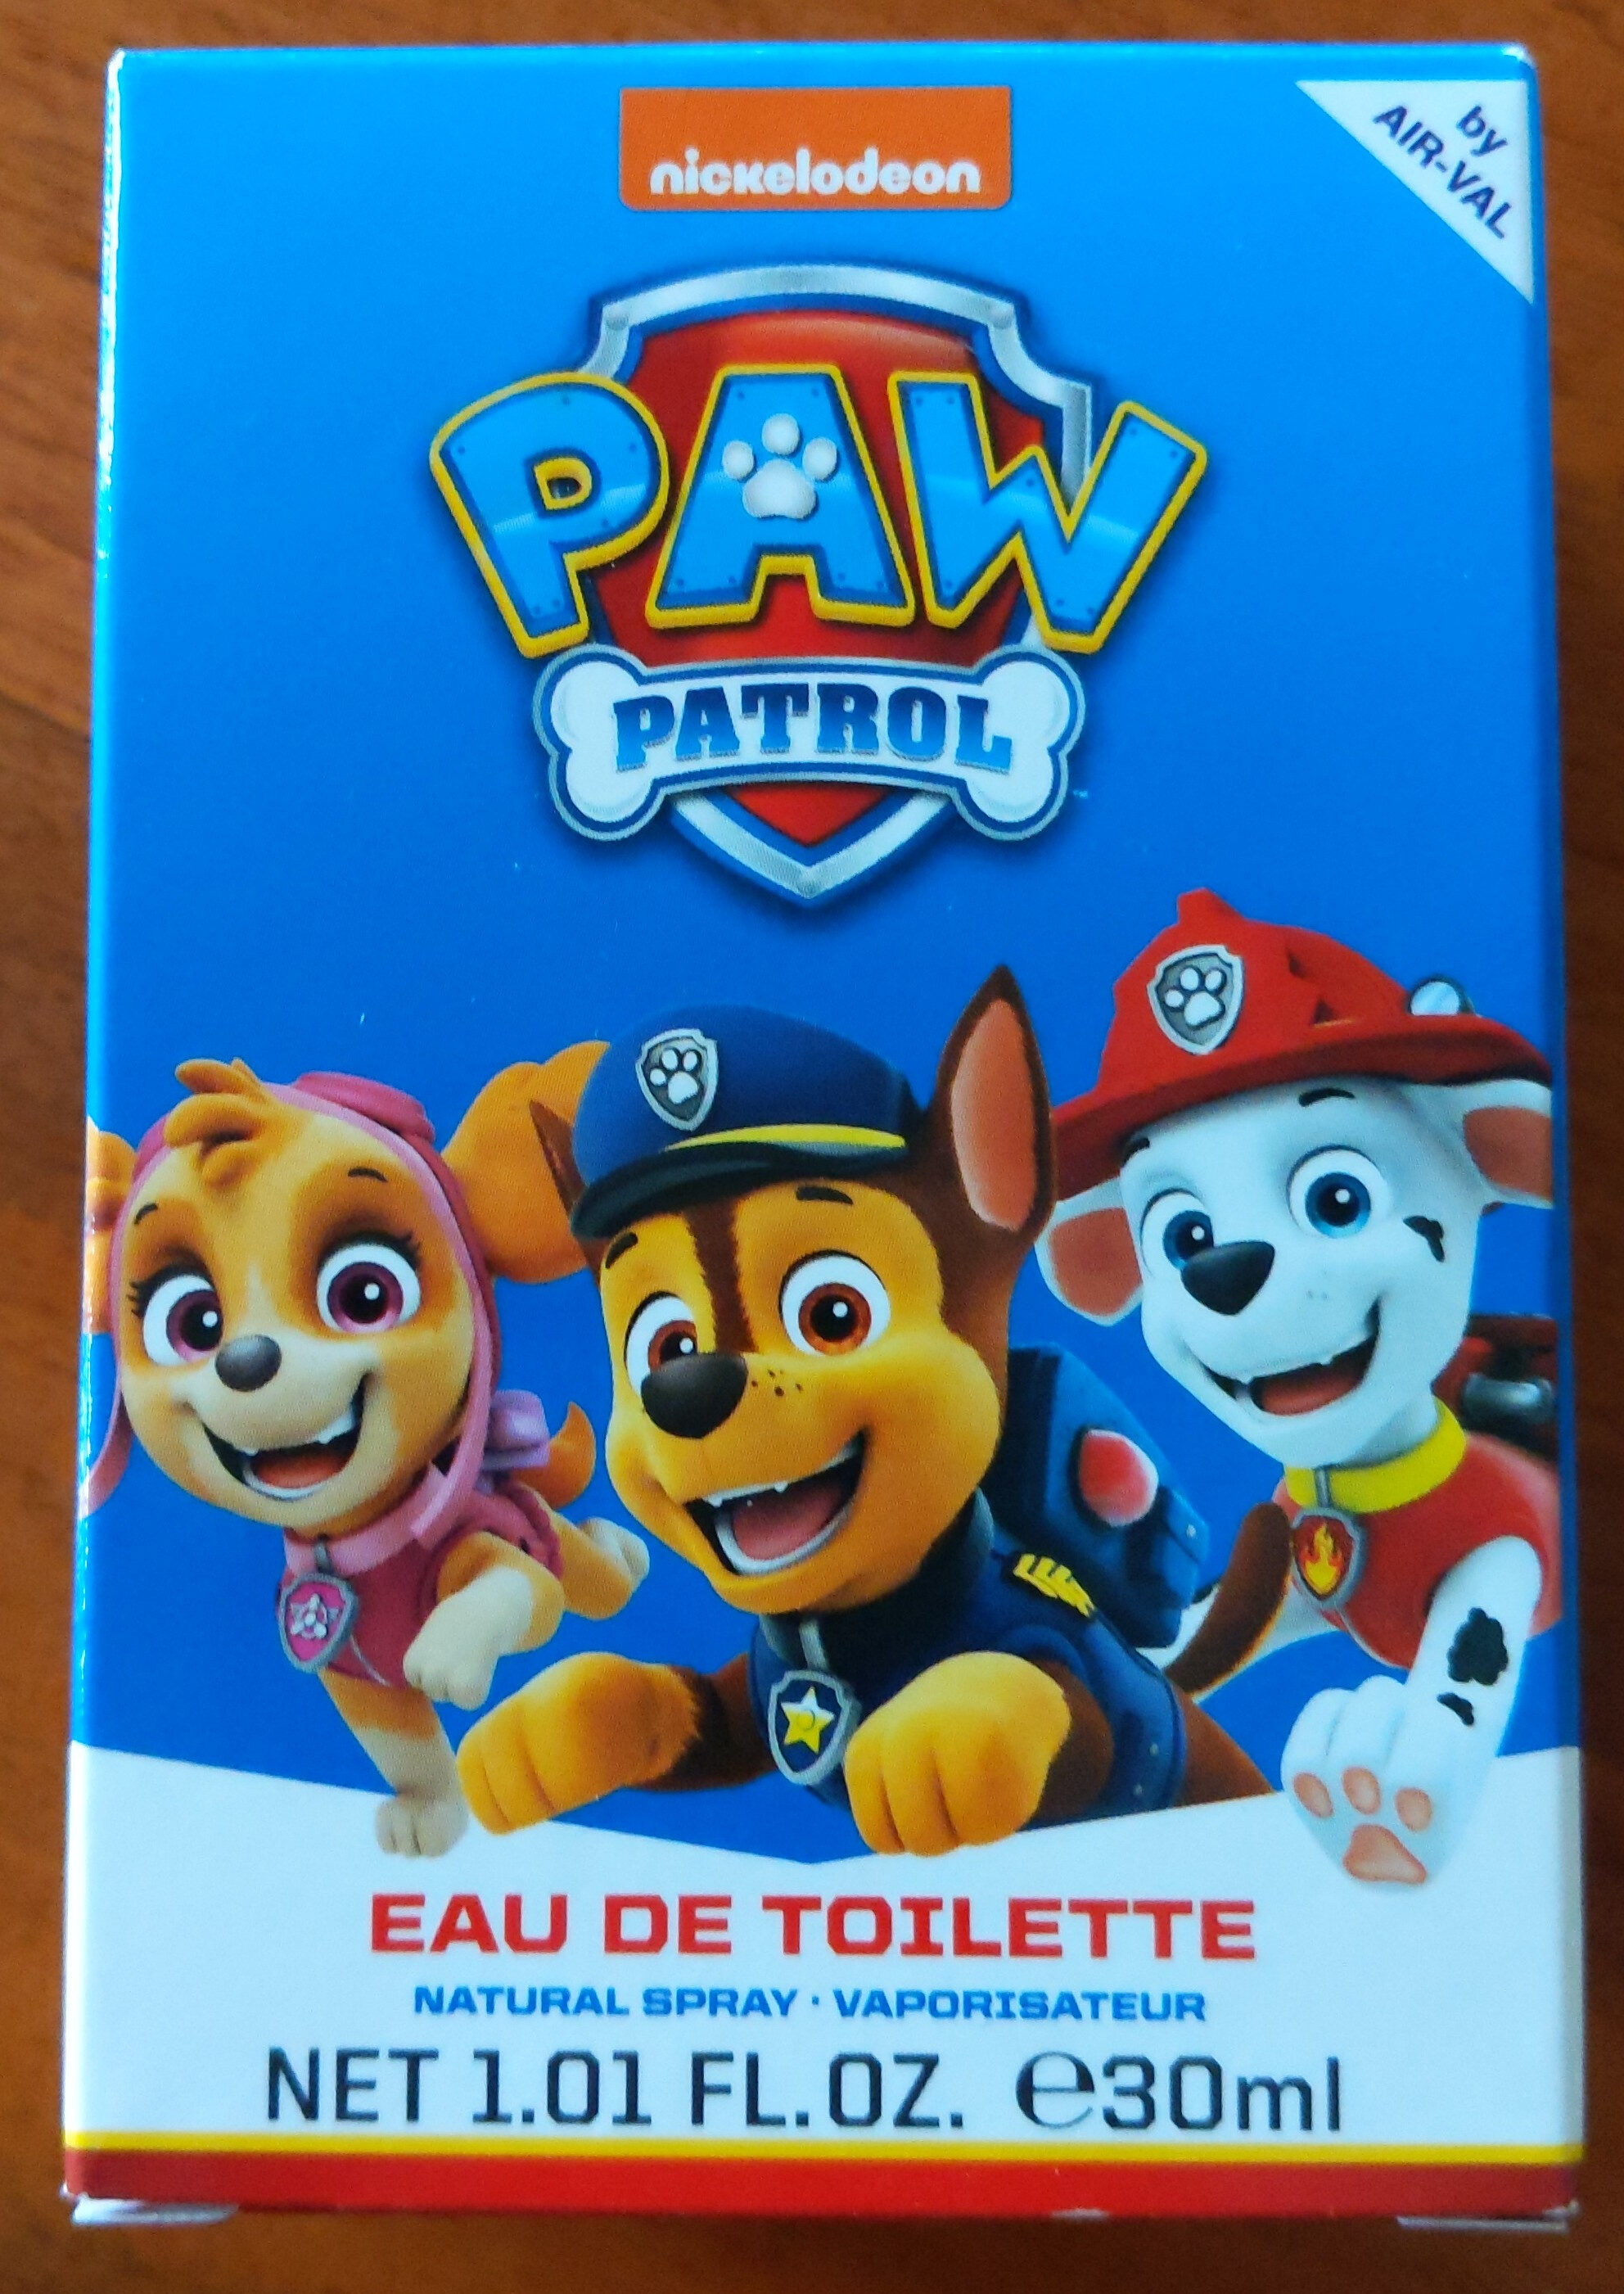 Eau de toilette PAW PATROL - Продукт - fr